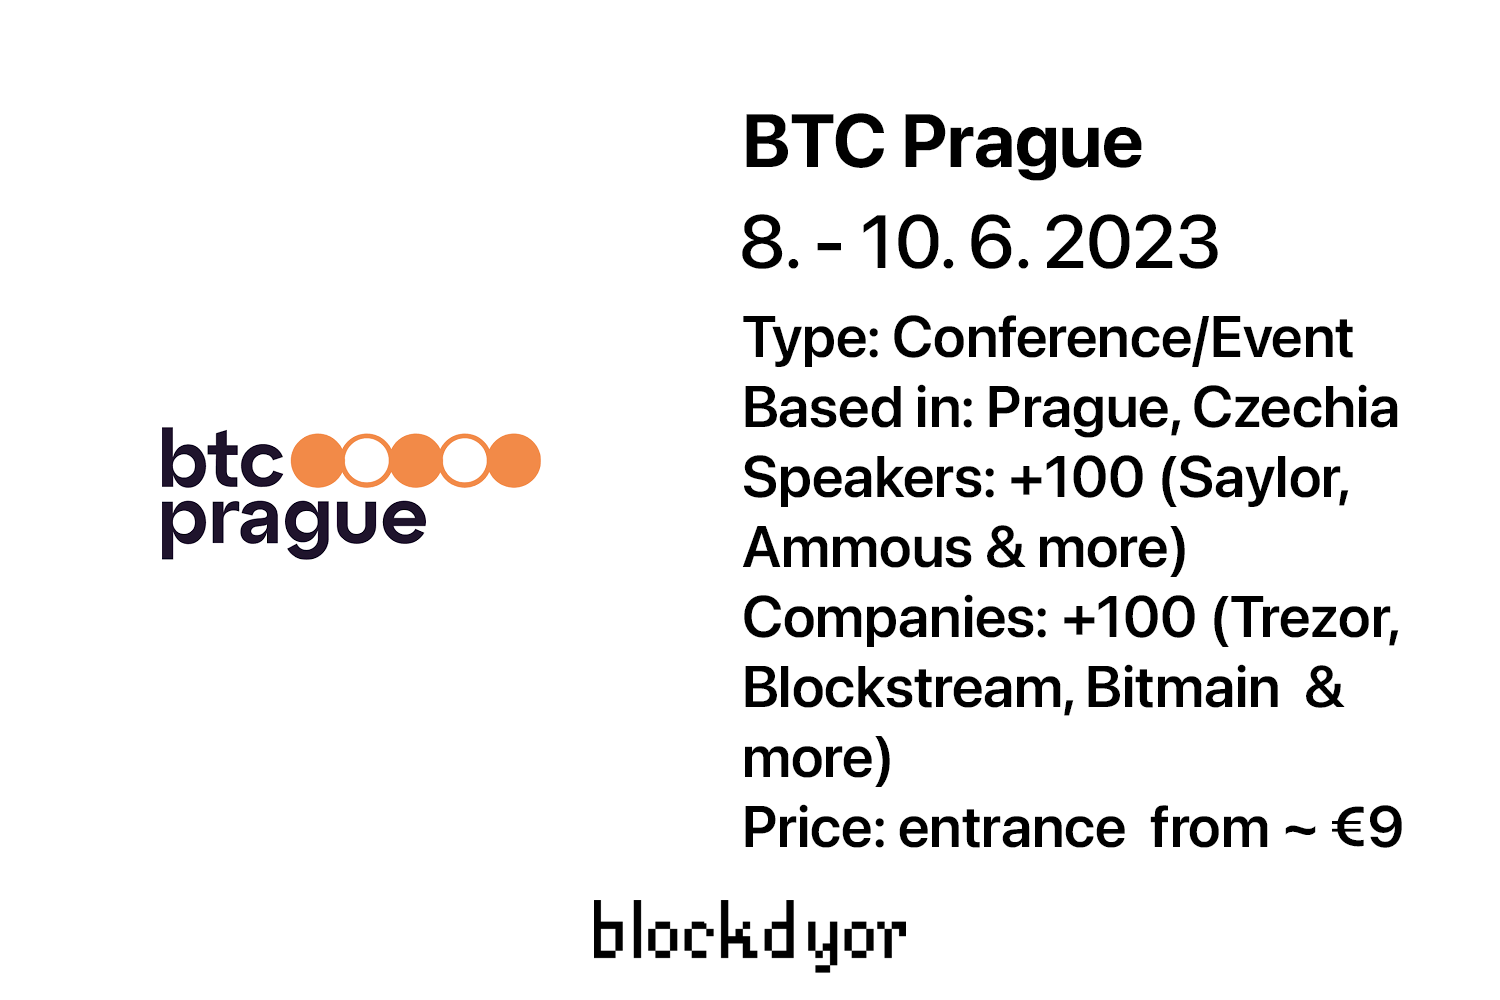 BTC Prague Overview